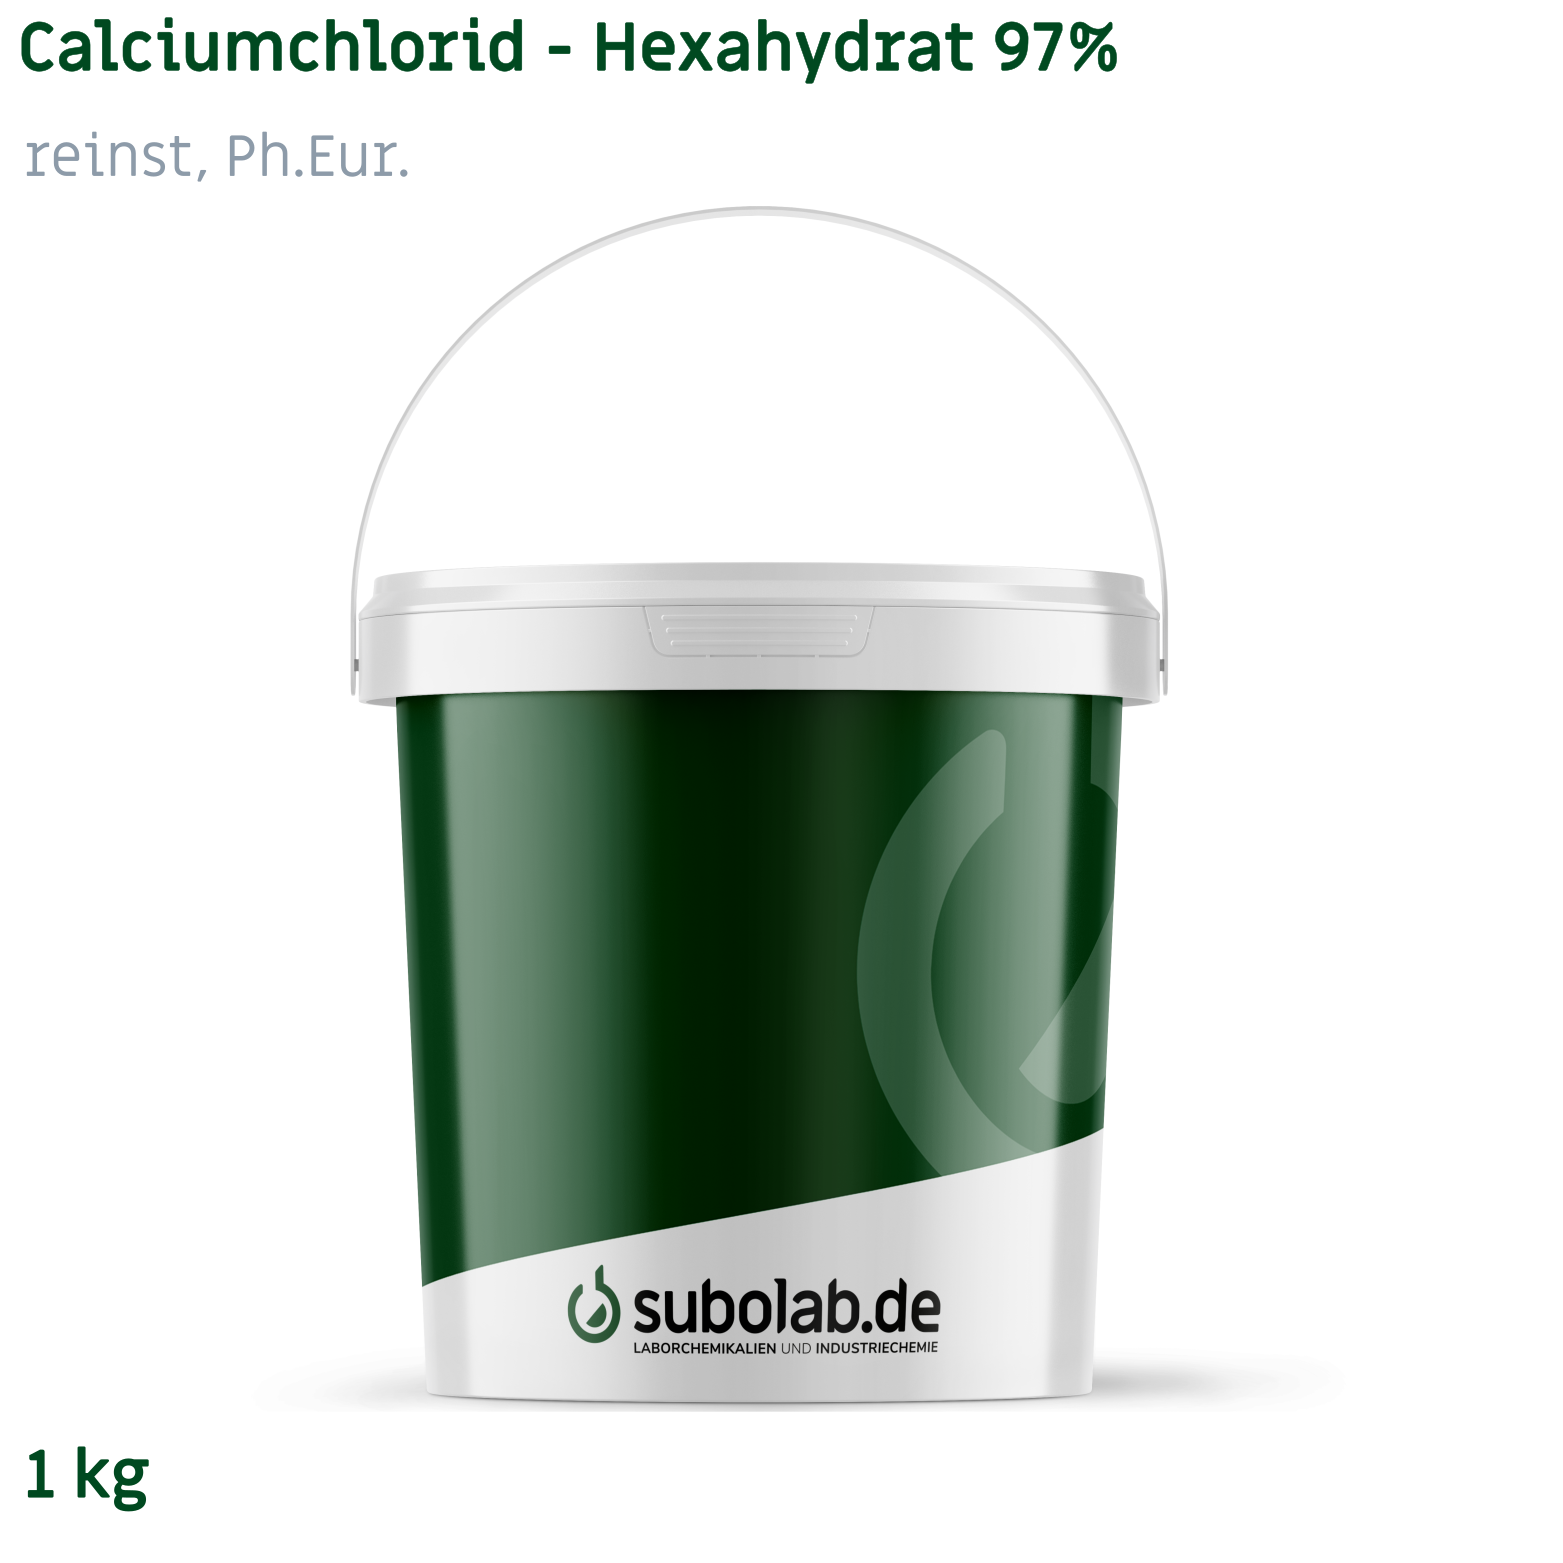 Bild von Calciumchlorid - Hexahydrat 97% reinst, Ph.Eur. (1 kg)